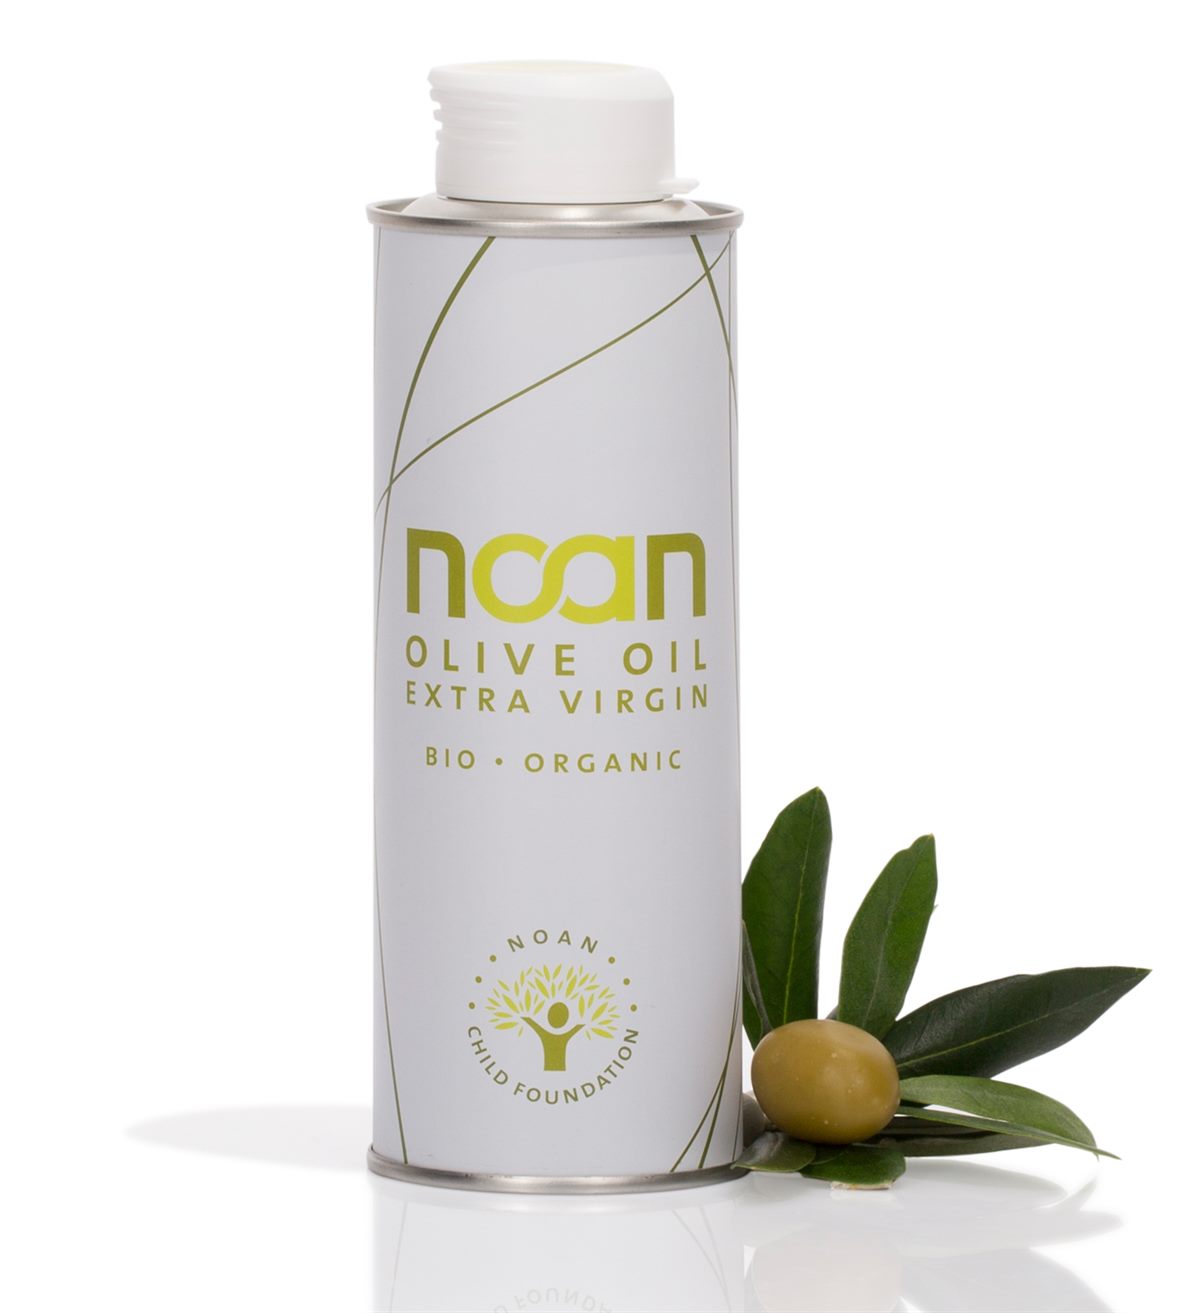 Noan classic Olivenöl